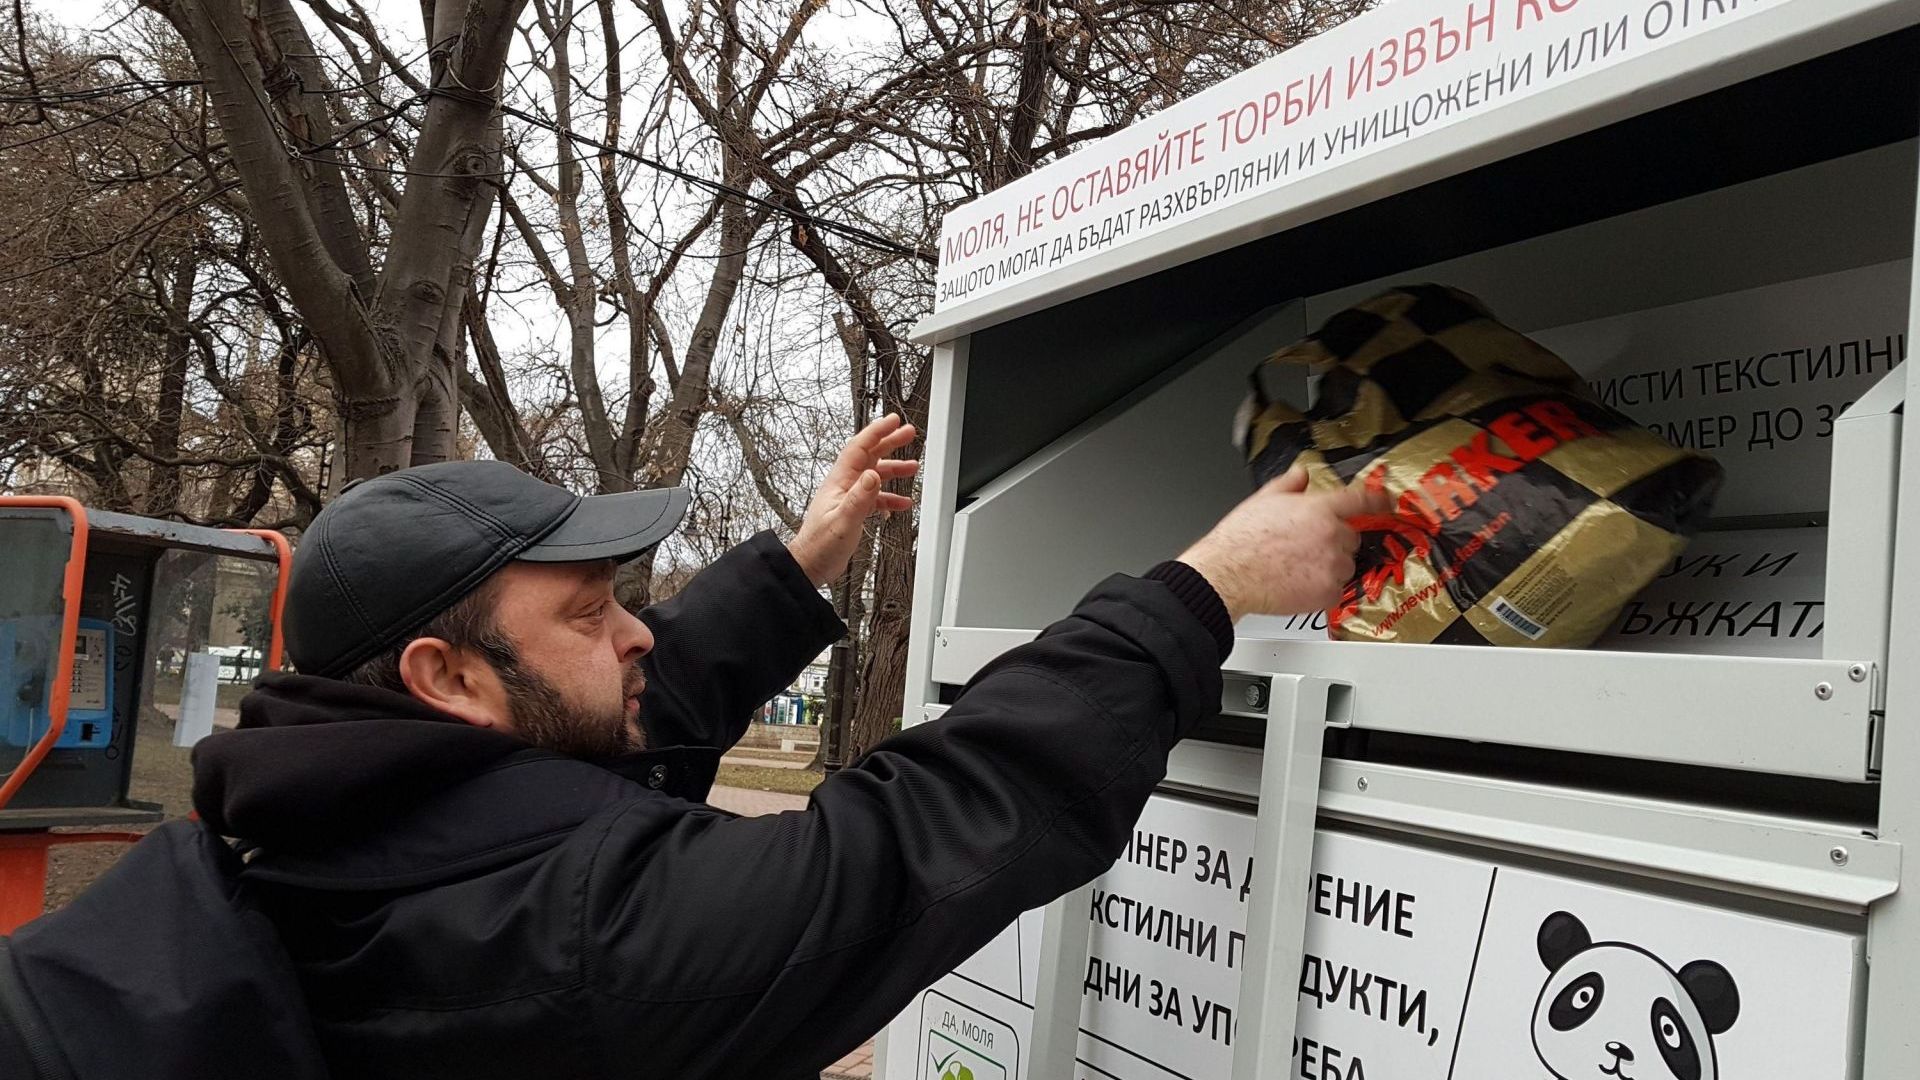 Във Варна ще слагат контейнери за текстил, защитени от вандали